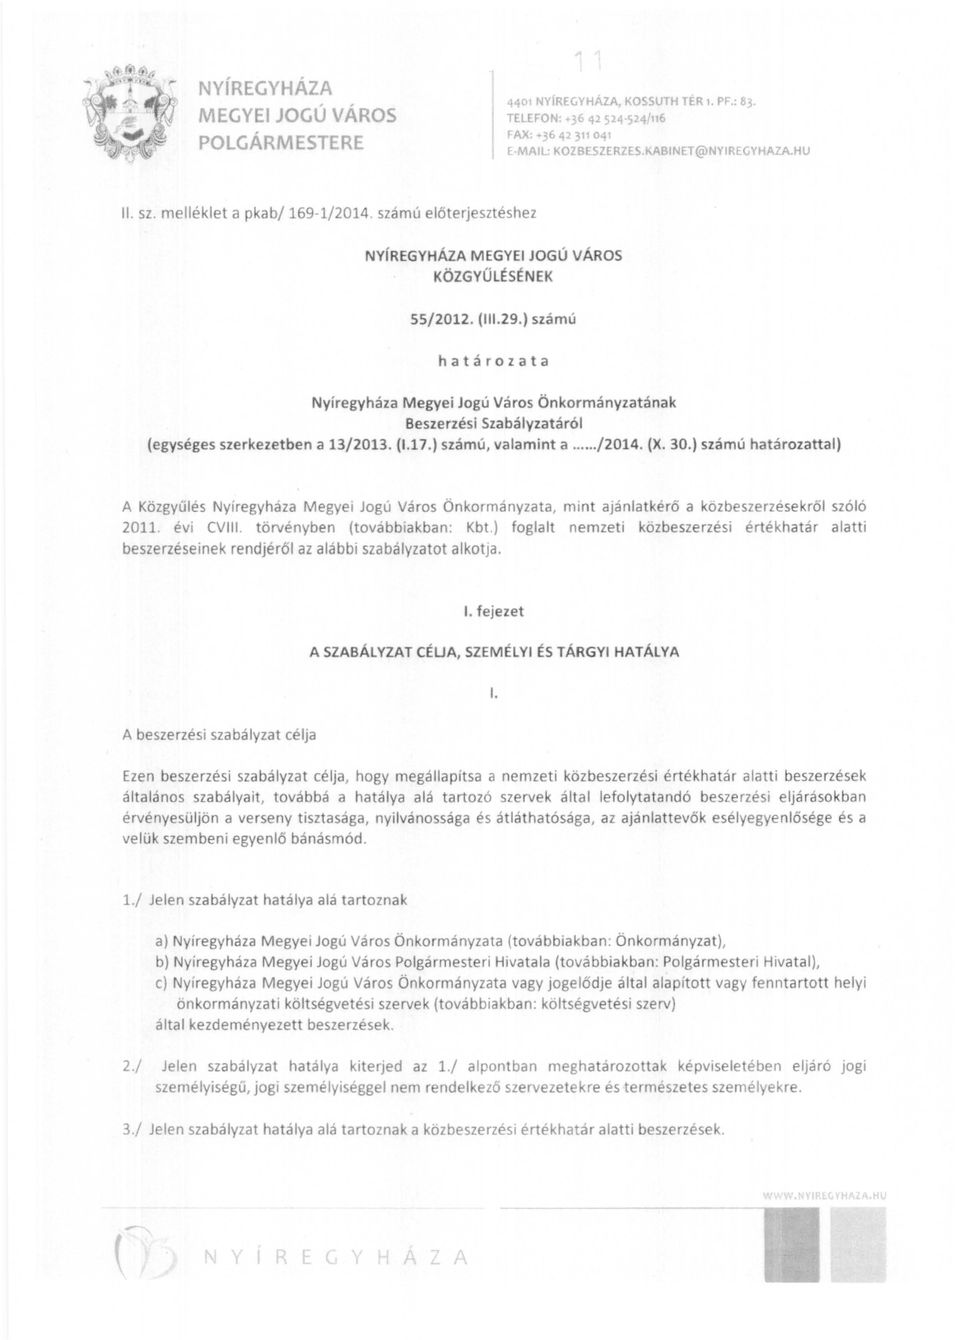 ) számú határozata Nyíregyháza Megyei Jogú Város Önkormányzatának Beszerzési Szabályzatáról (egységes szerkezetben a 13/2013. (1.17.) számú, valamint a..../2014. (X. 30.